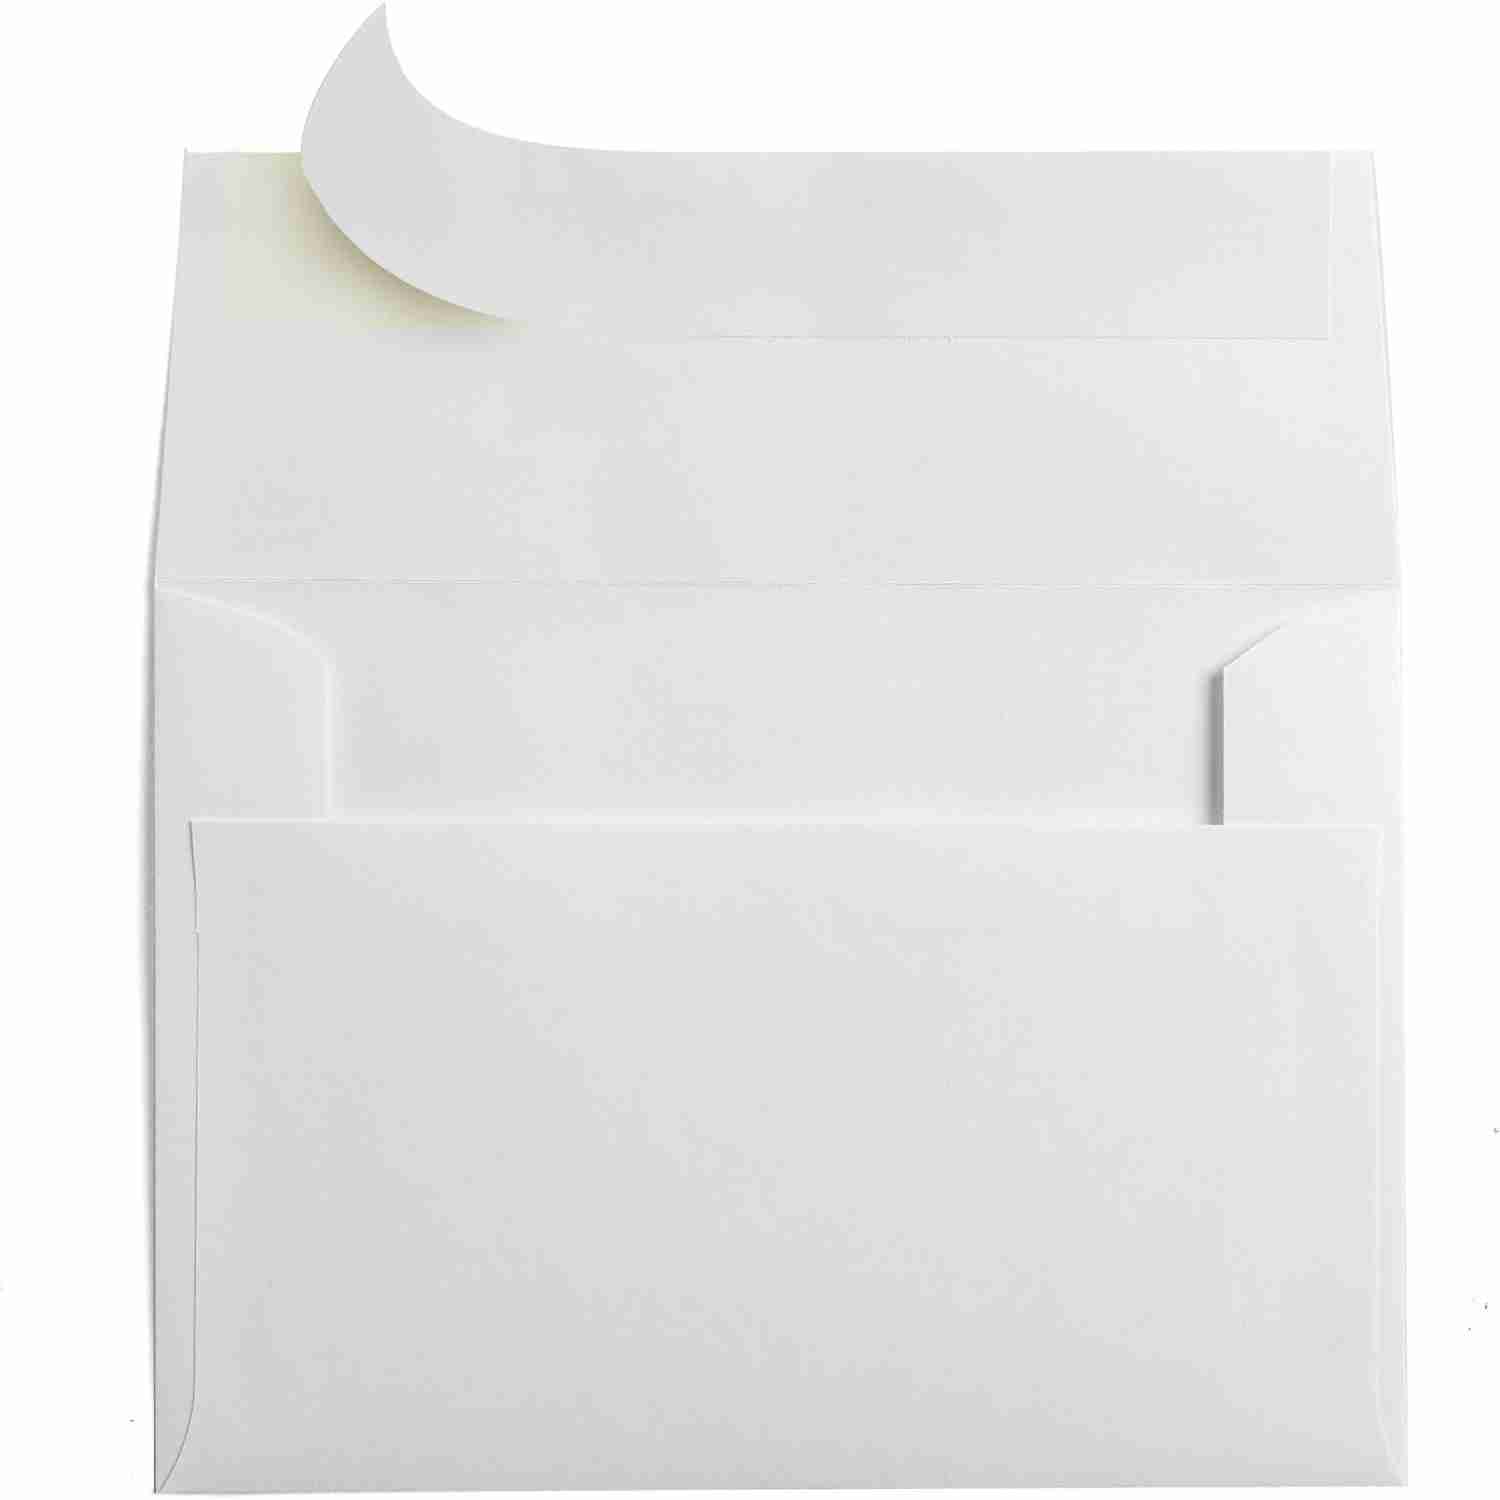 5x7-envelopes for cheap